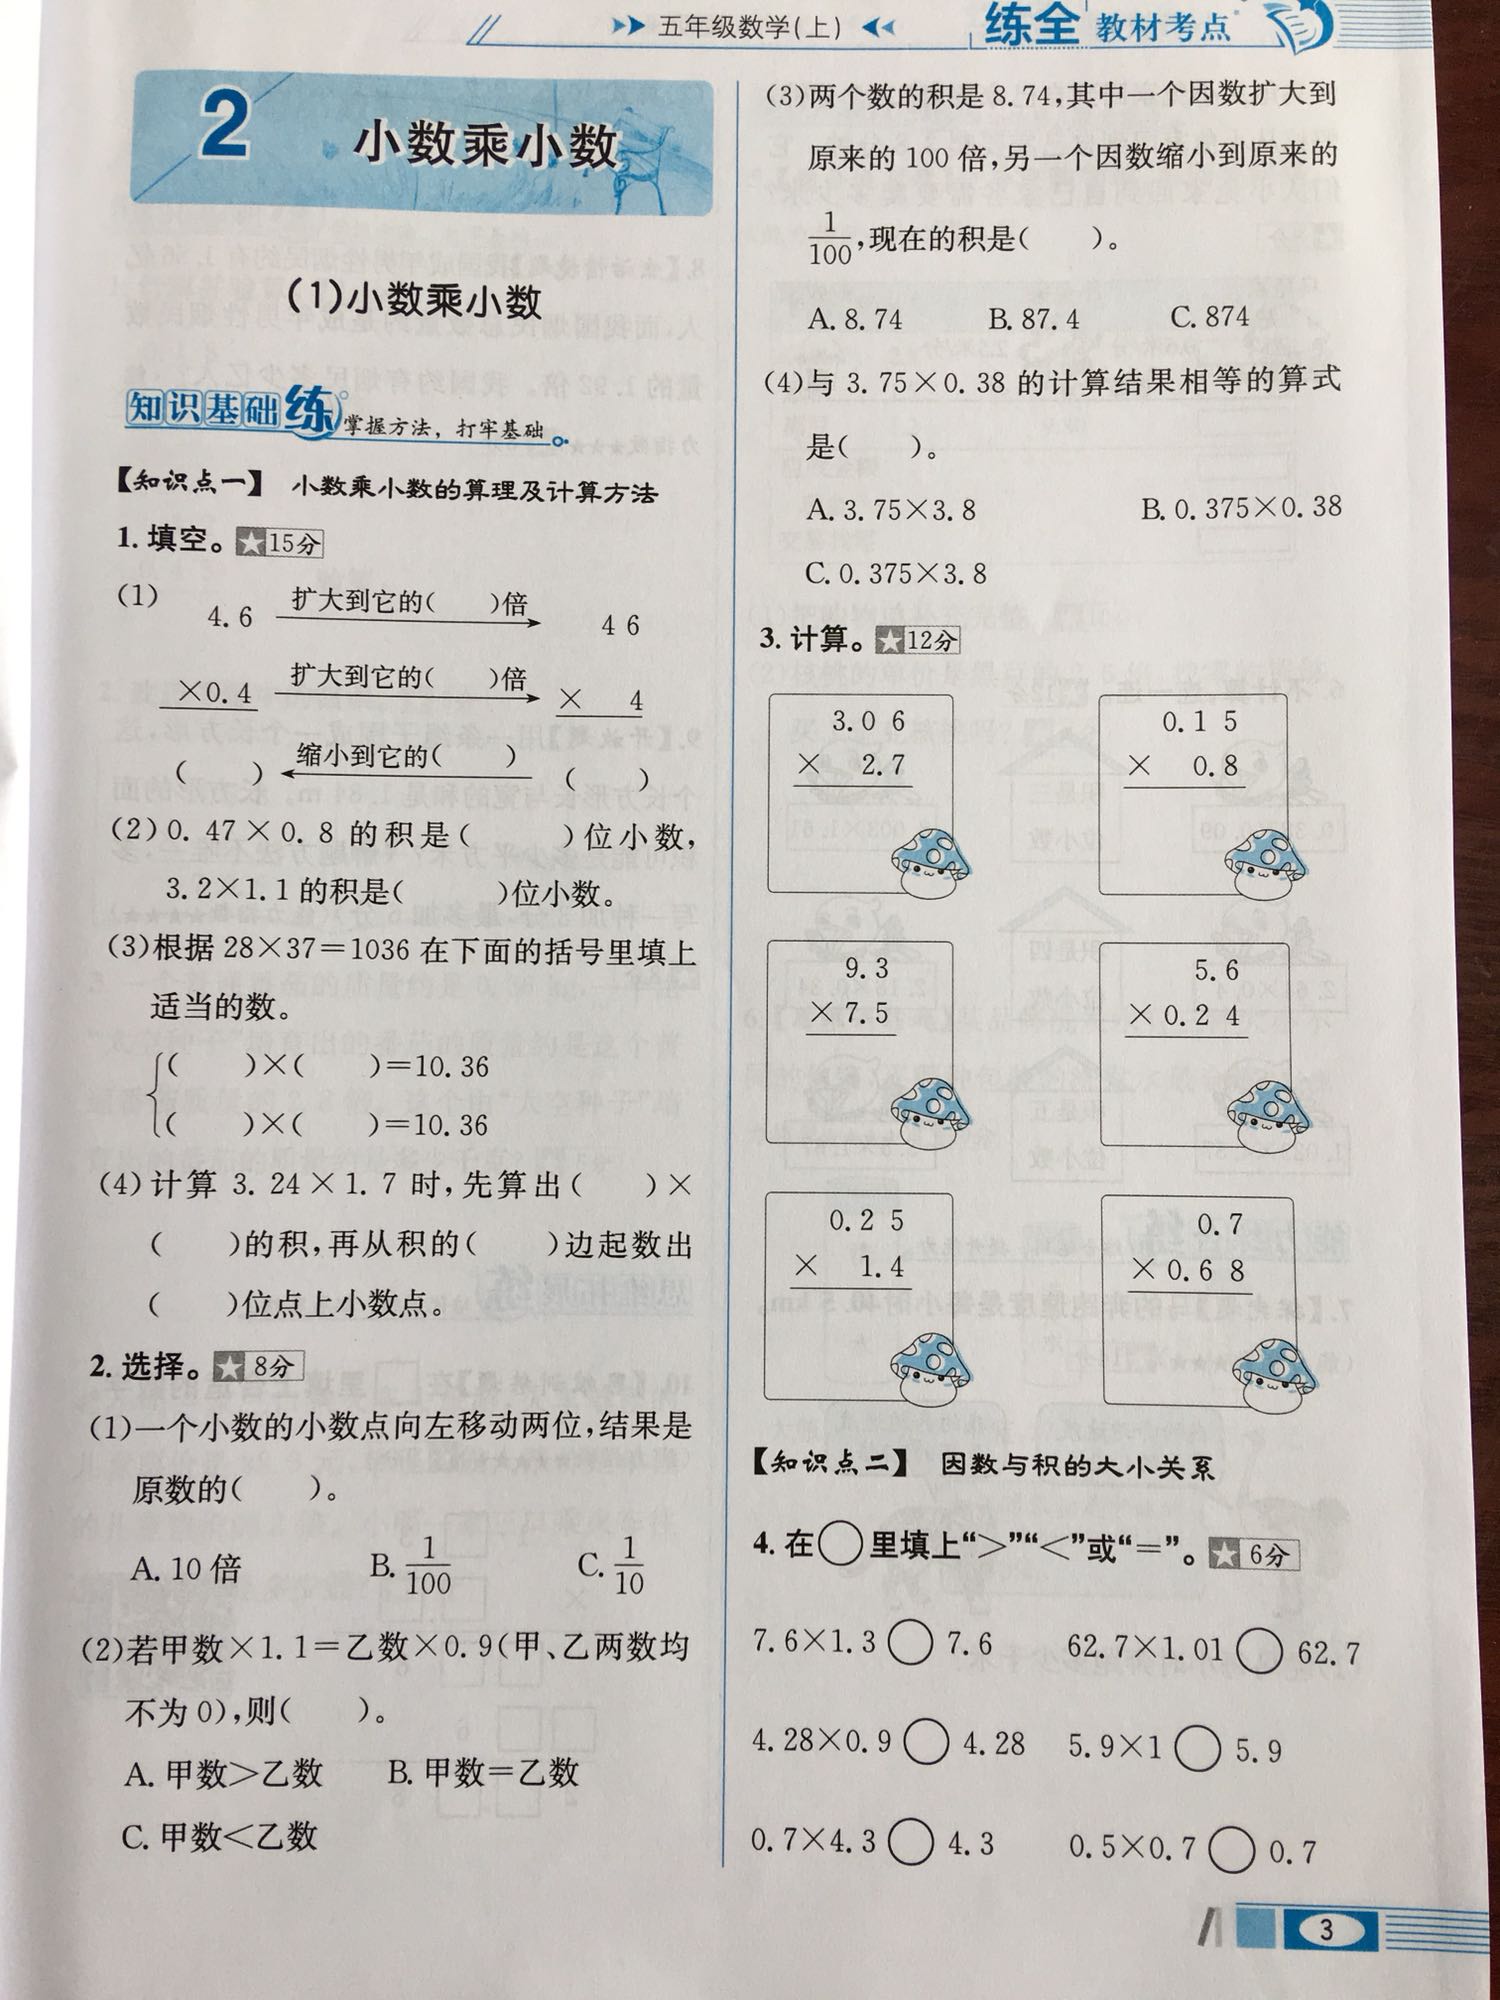 数学的辅导书，对学习很有帮助。